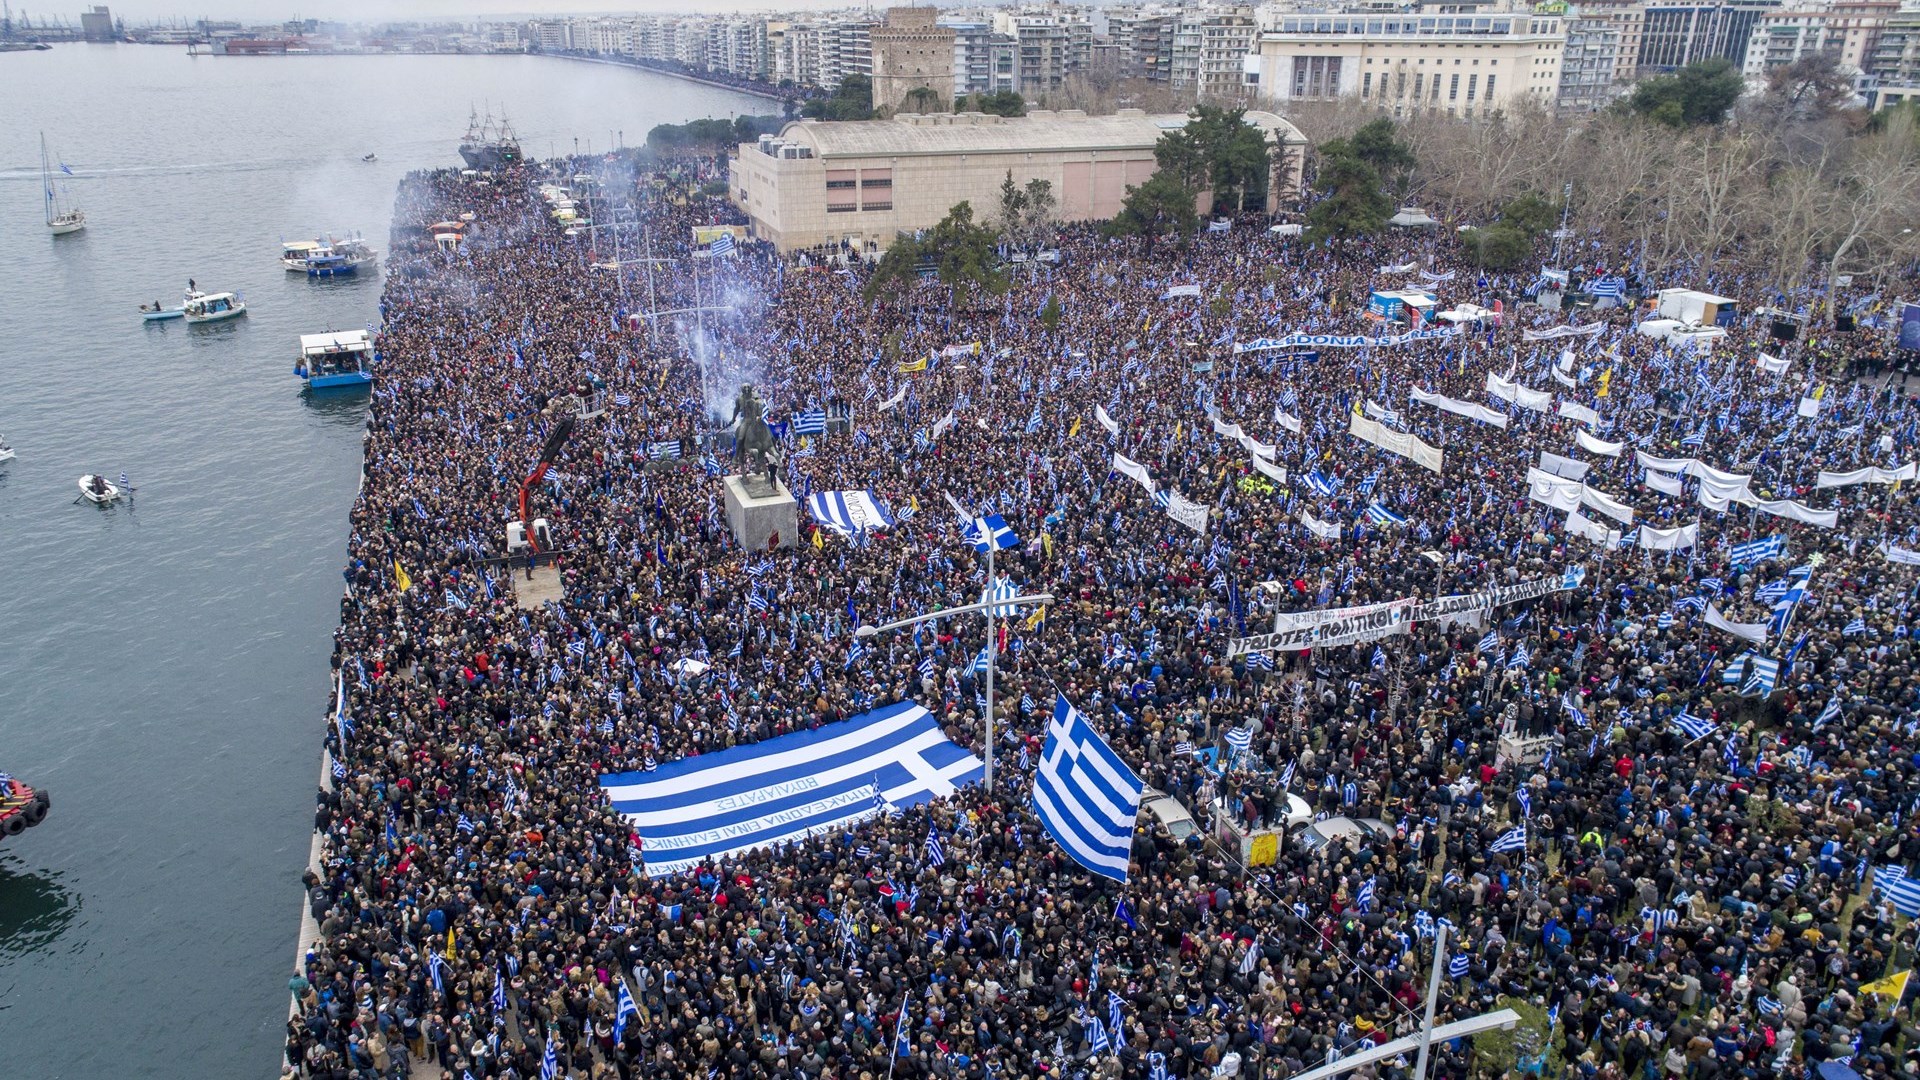 “Ραντεβού” στην Αθήνα στις 4 Φεβρουαρίου με νέο συλλαλητήριο για τη Μακεδονία